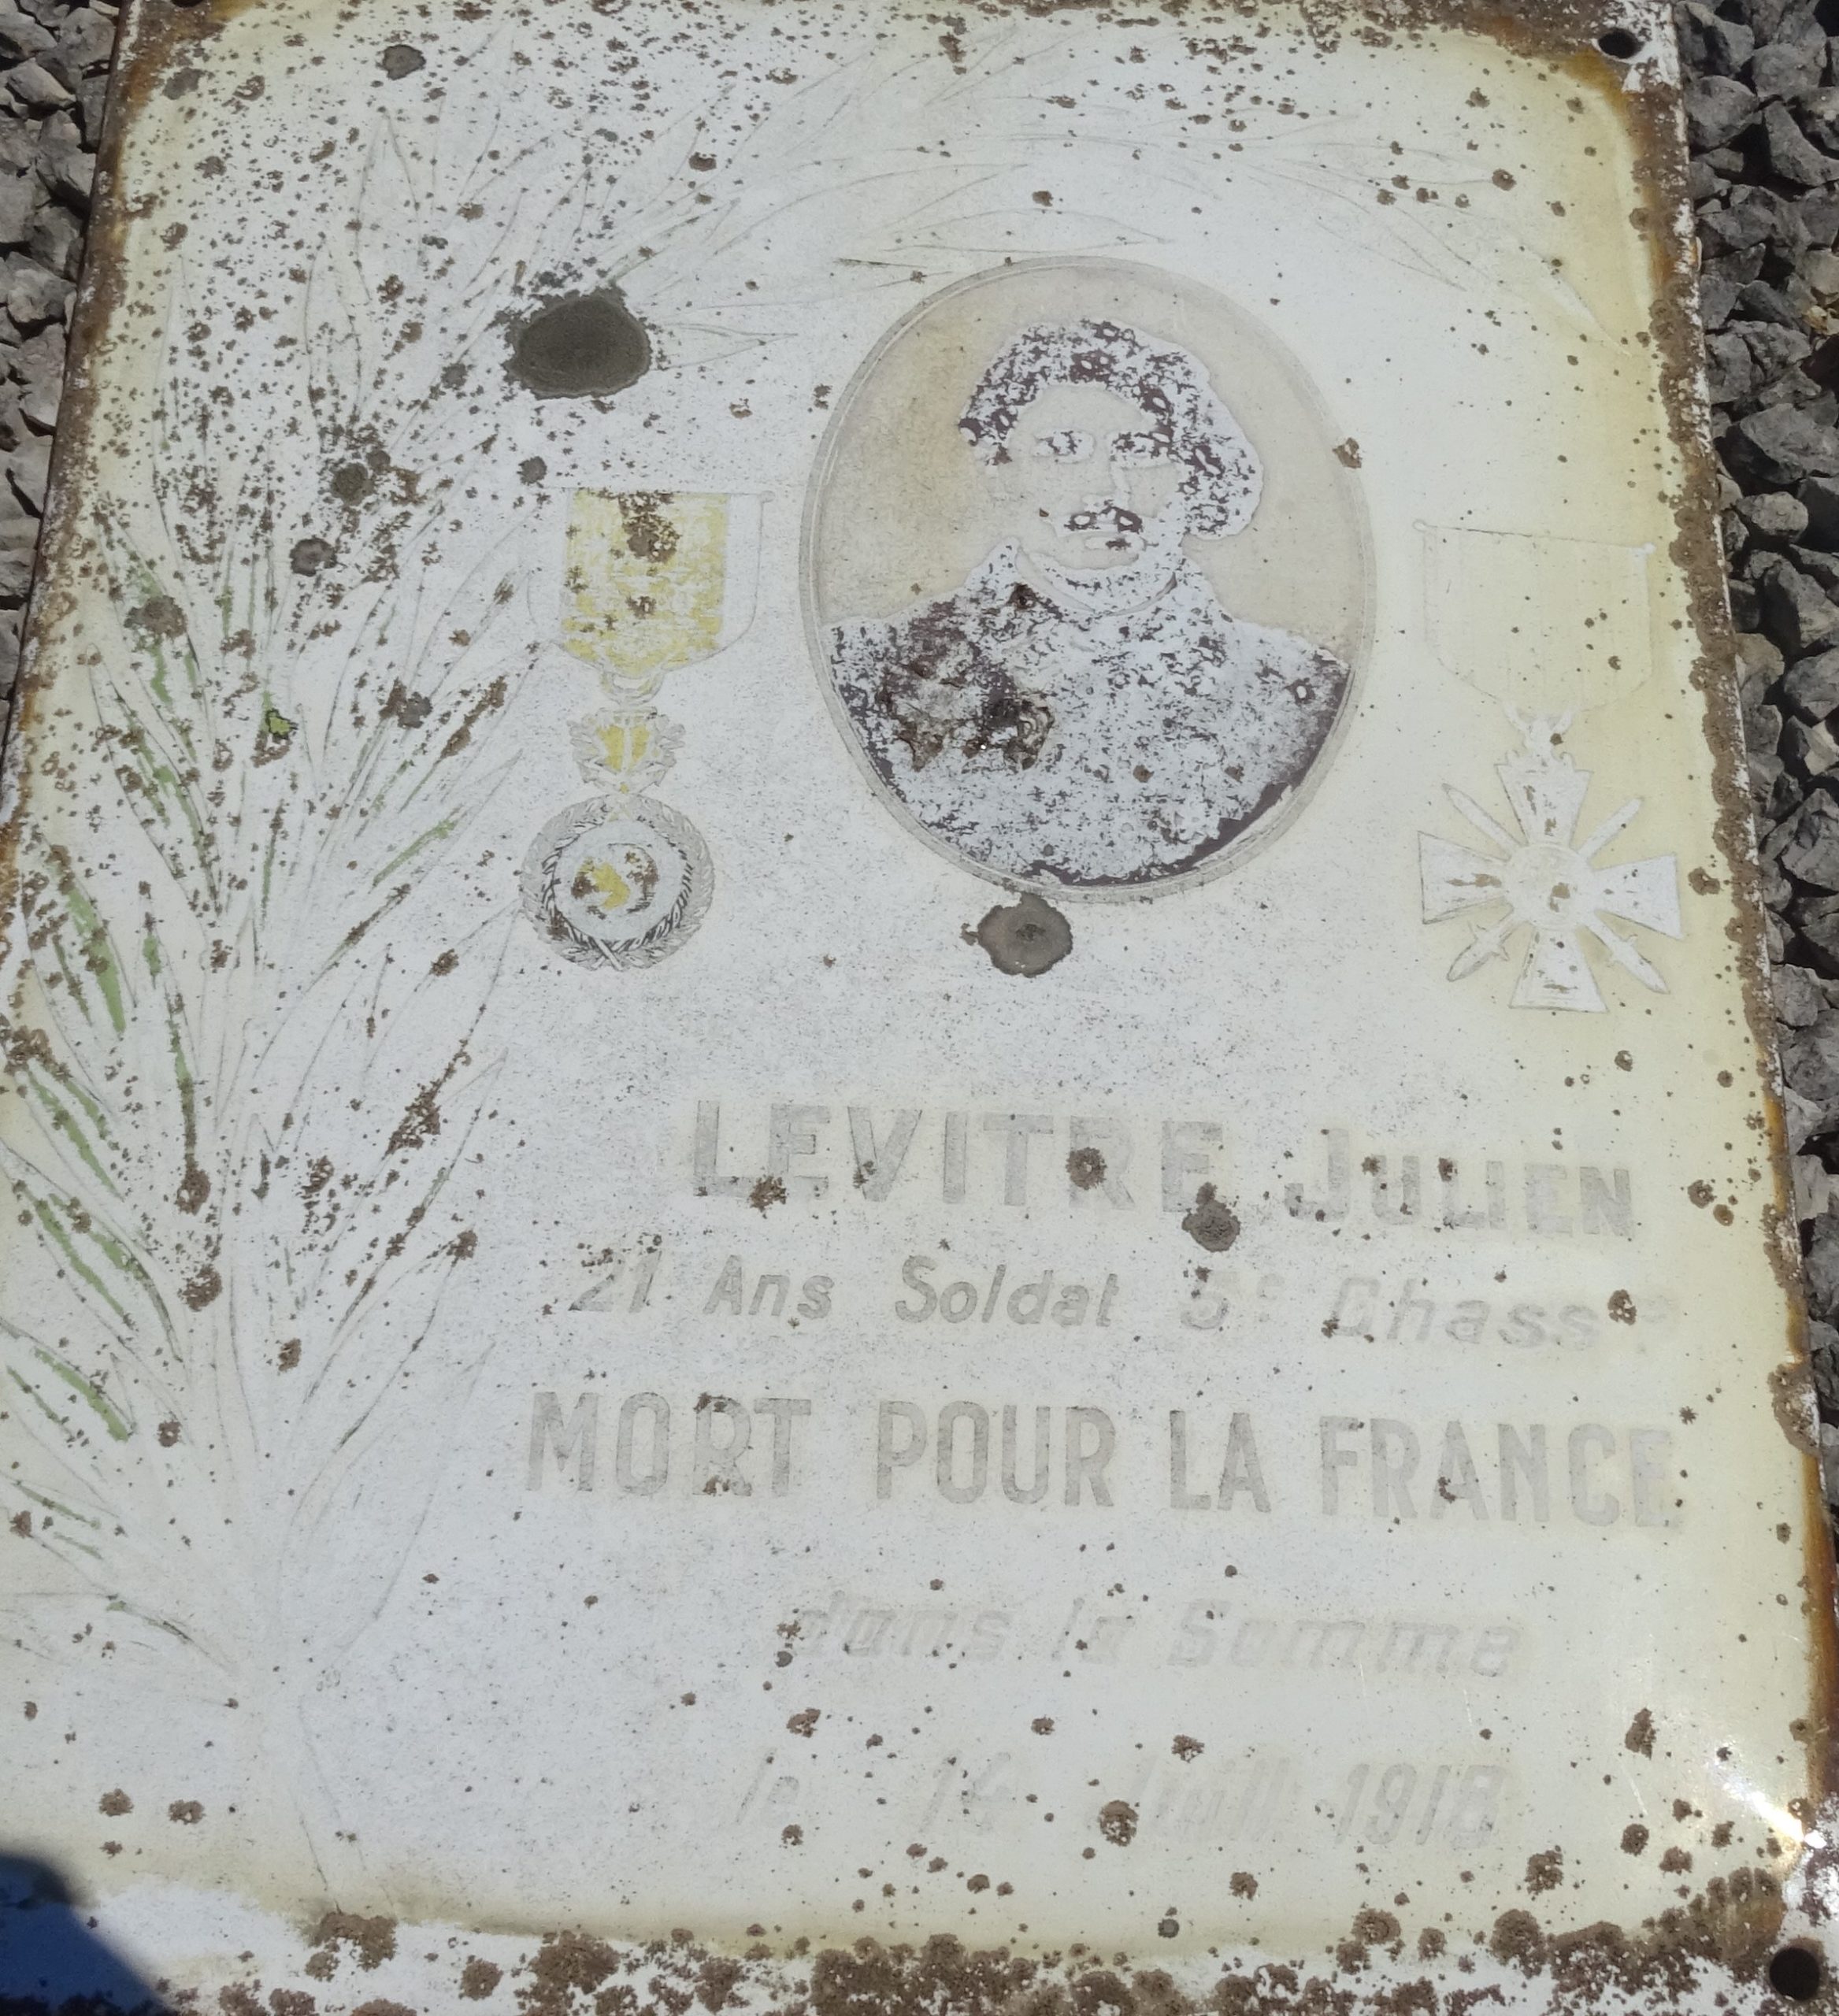 Photographie de la plaque présente sur la tombe de Julien Levitre au cimetière d'Arnay-le-Duc